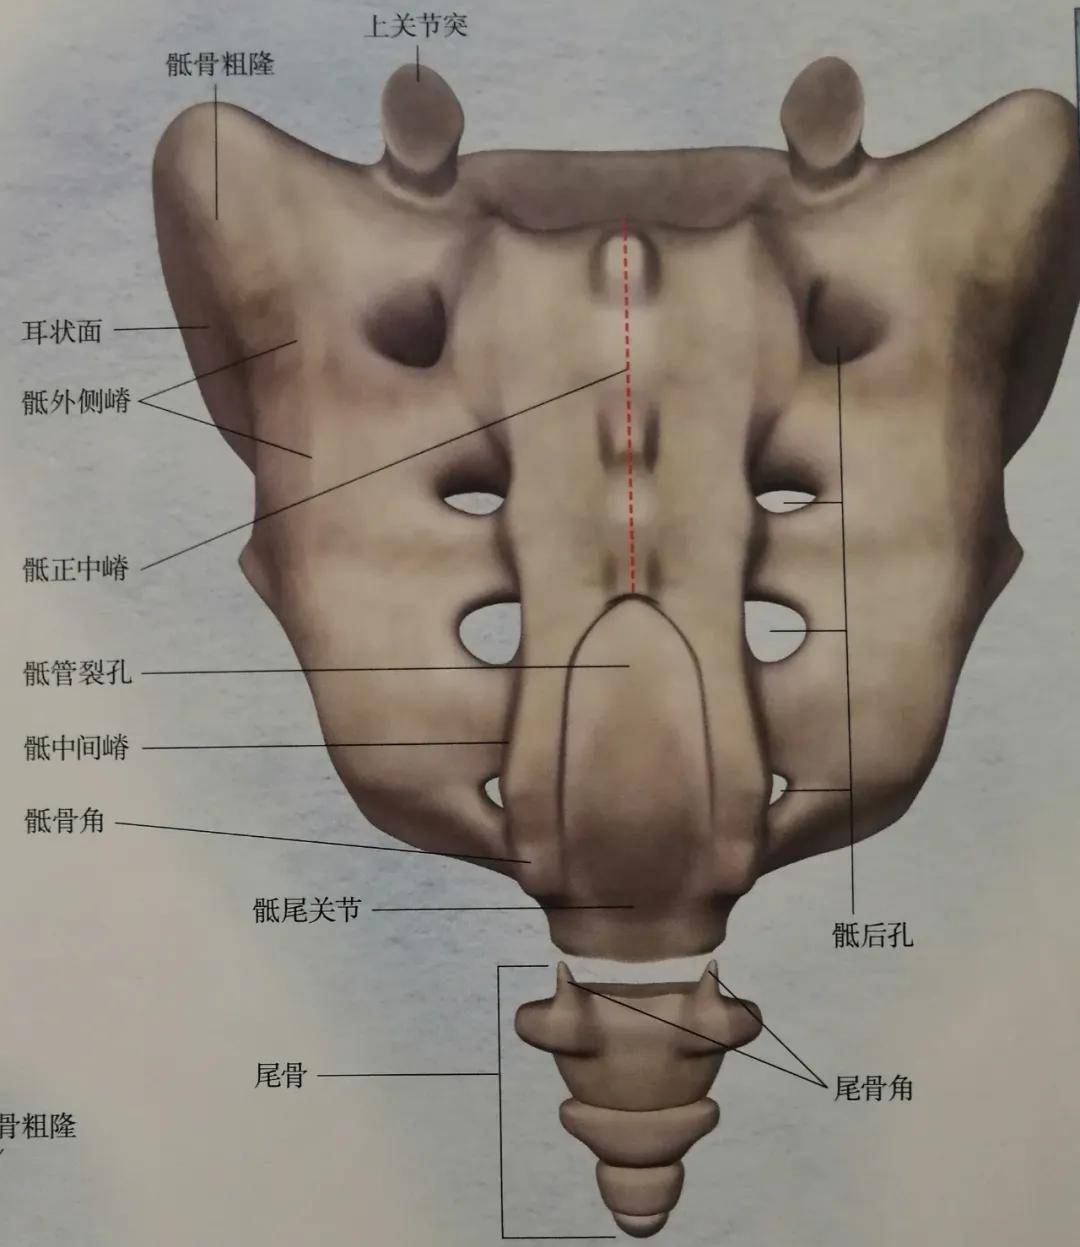 尾椎,由于人类的进化,骶椎为了支撑体重逐渐密合成骶骨,尾骨逐渐退化